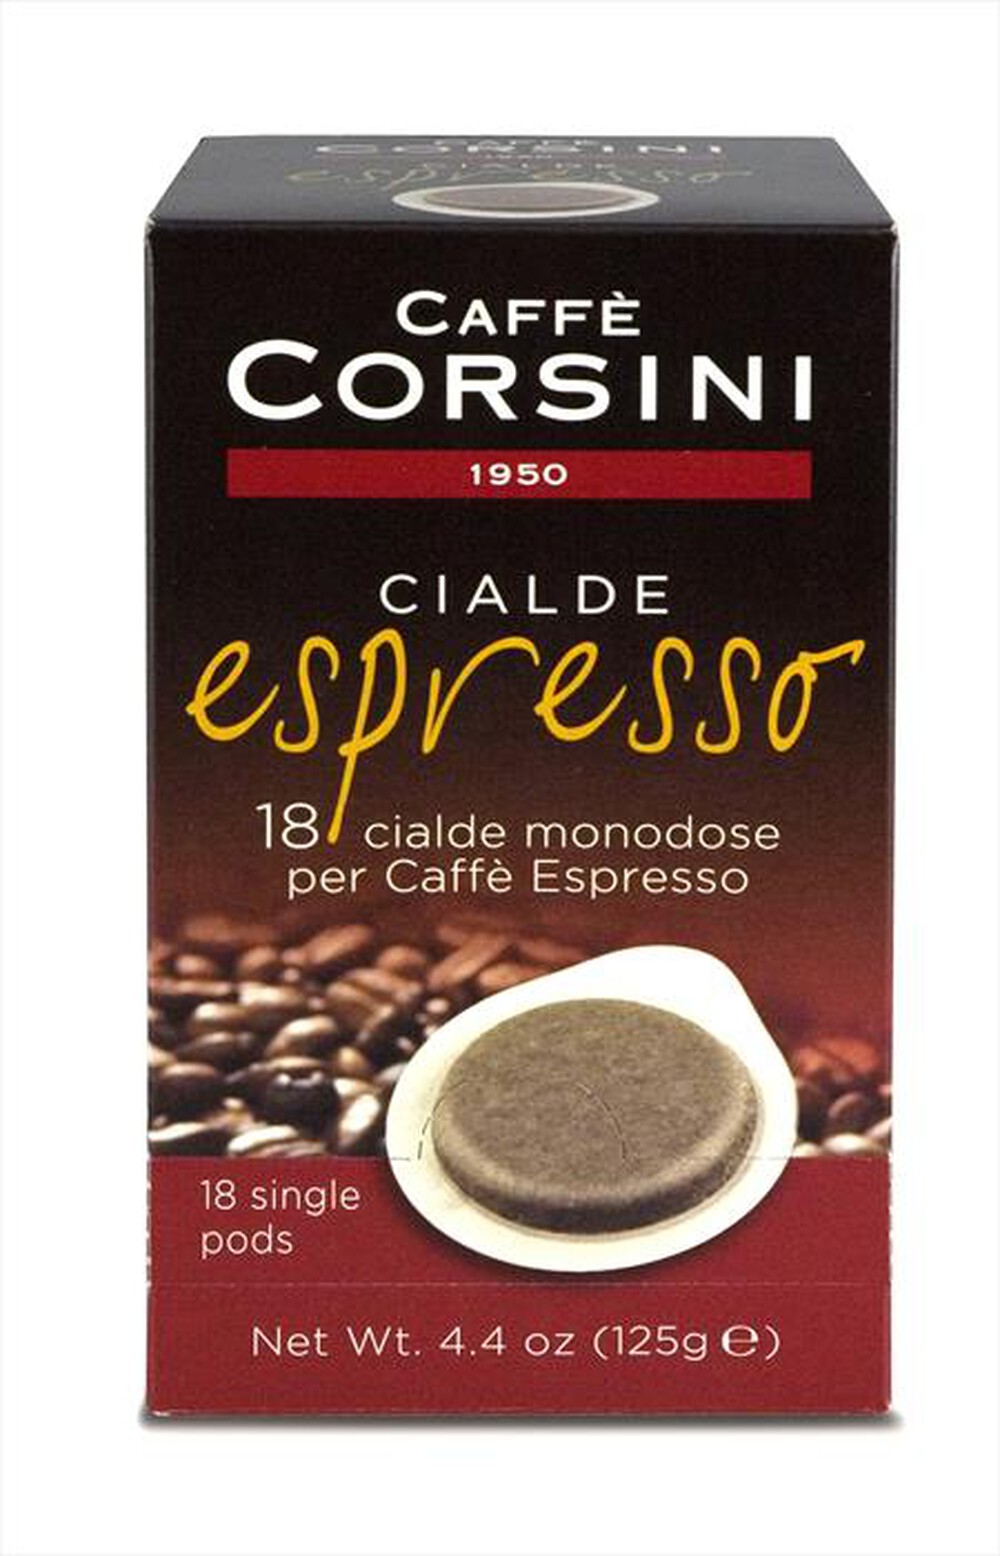 "CORSINI - Espresso 18 cialde - "